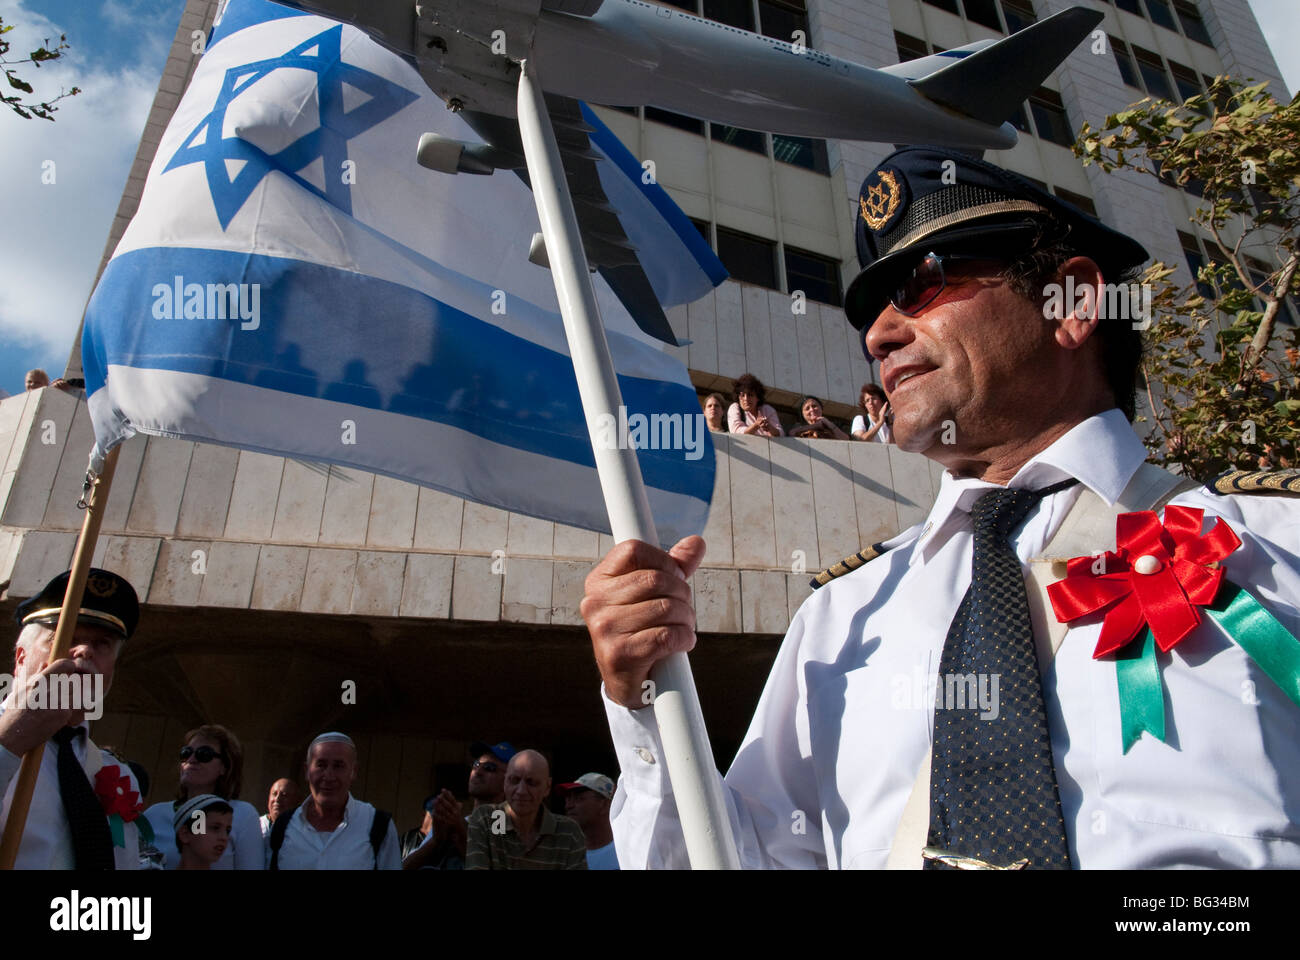 El al worker holding israeli flag during Jerusalem march Stock Photo